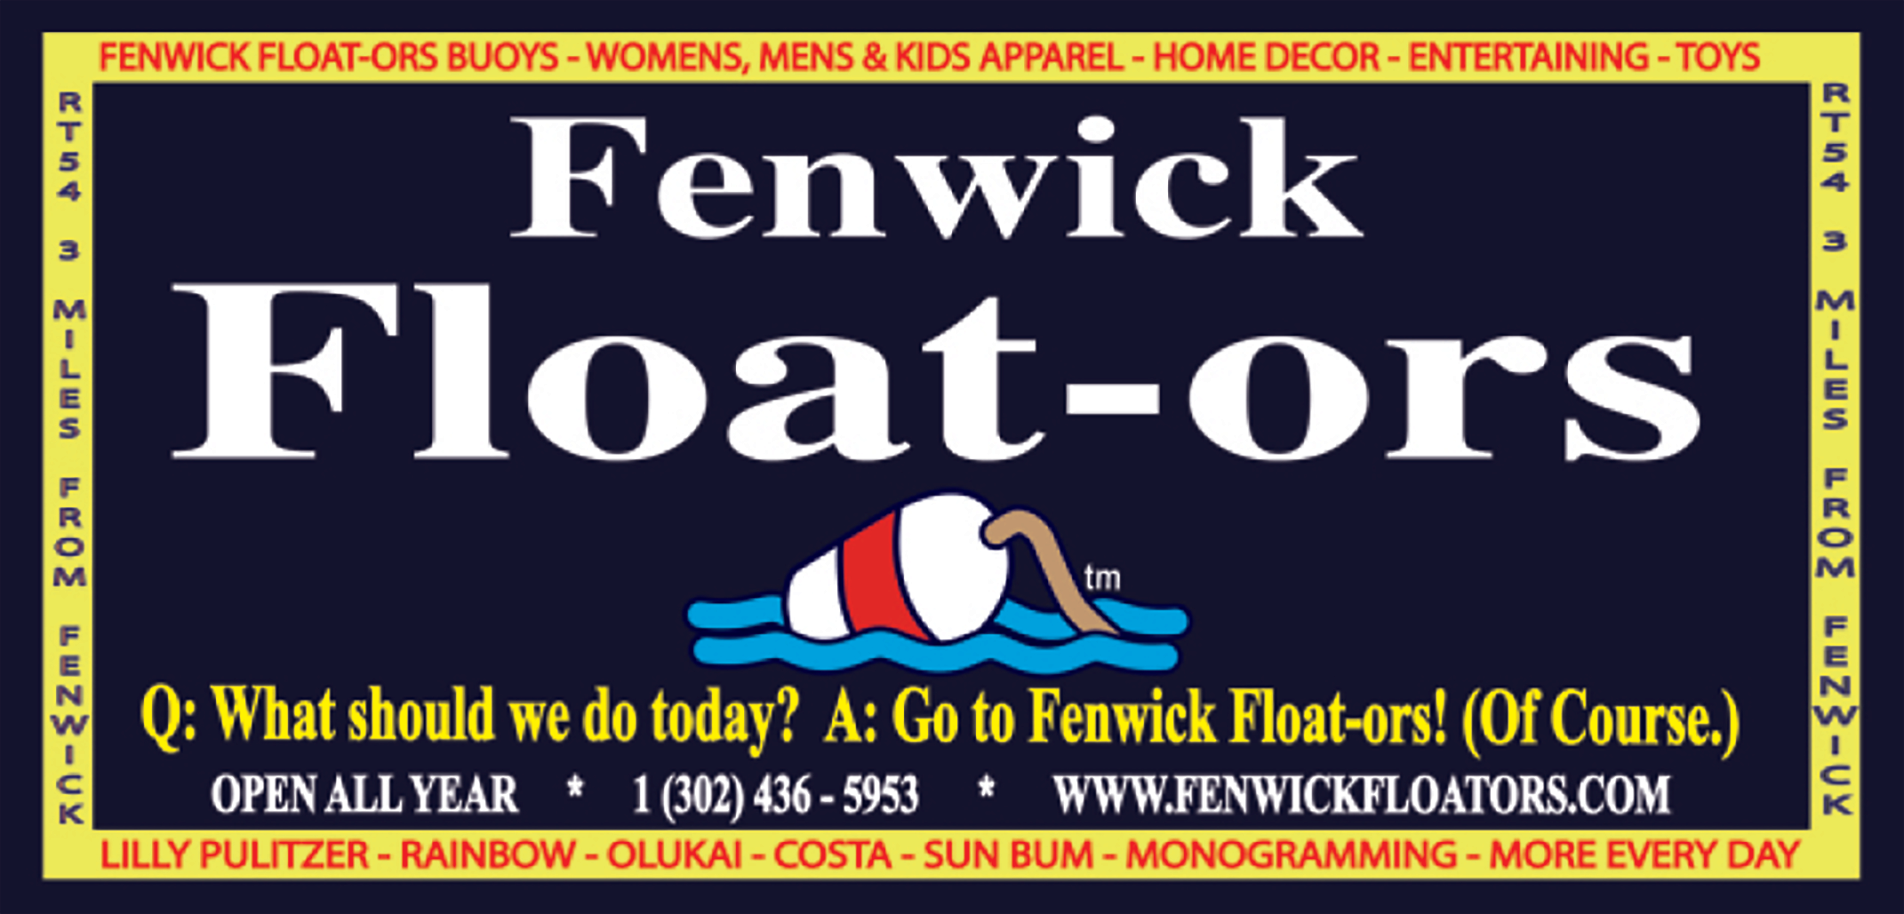 FENWICK FLOAT-ORS Print Ad